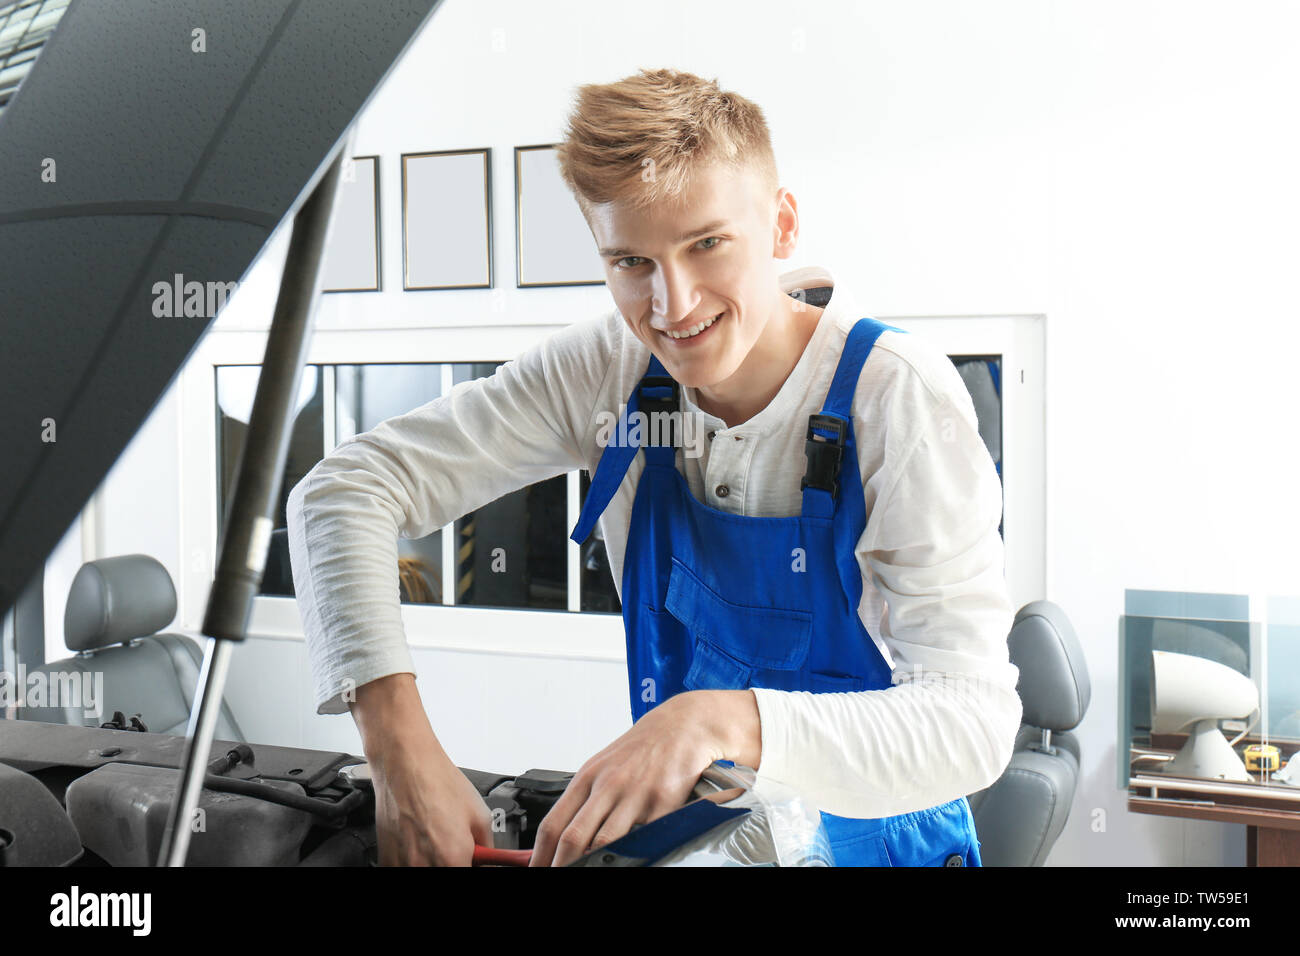 Young mechanic repairing car in body shop Stock Photo